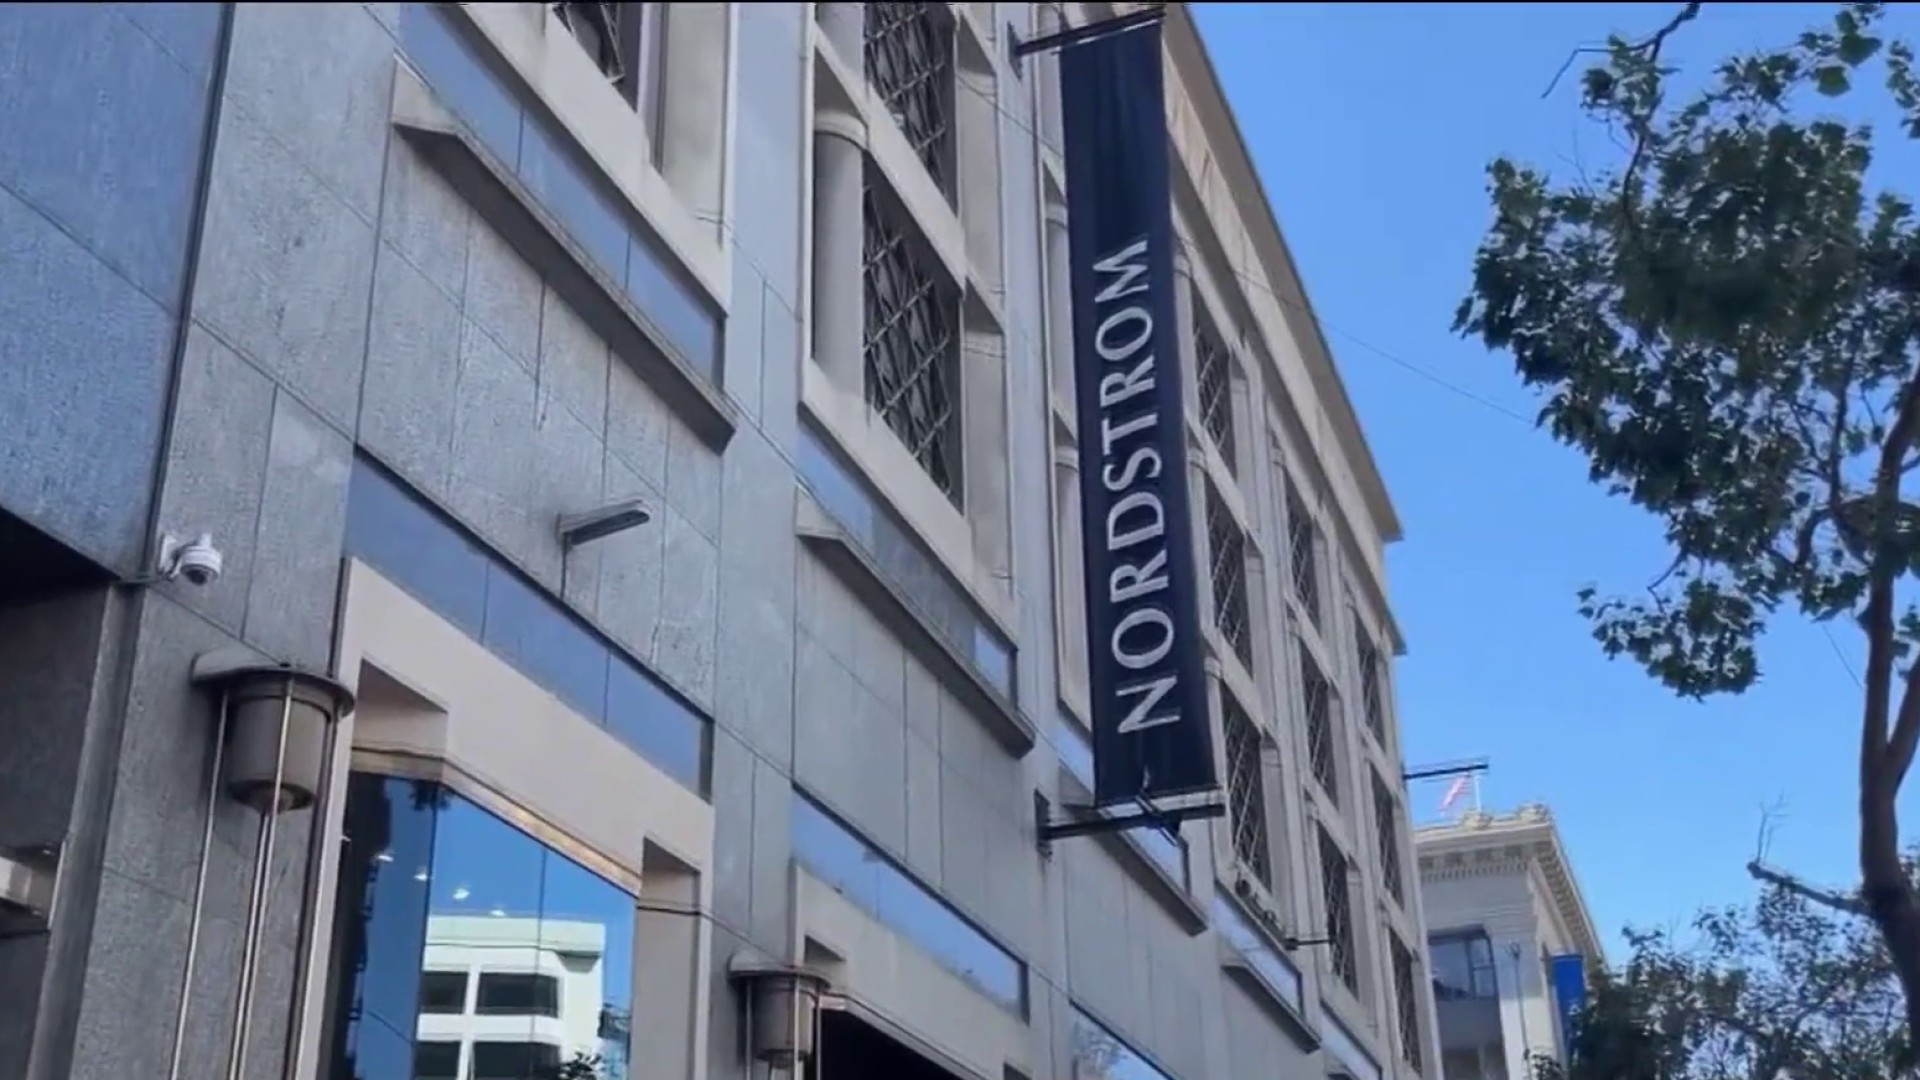 Nordstrom Closing Both San Francisco Stores, Citing 'Dynamics of